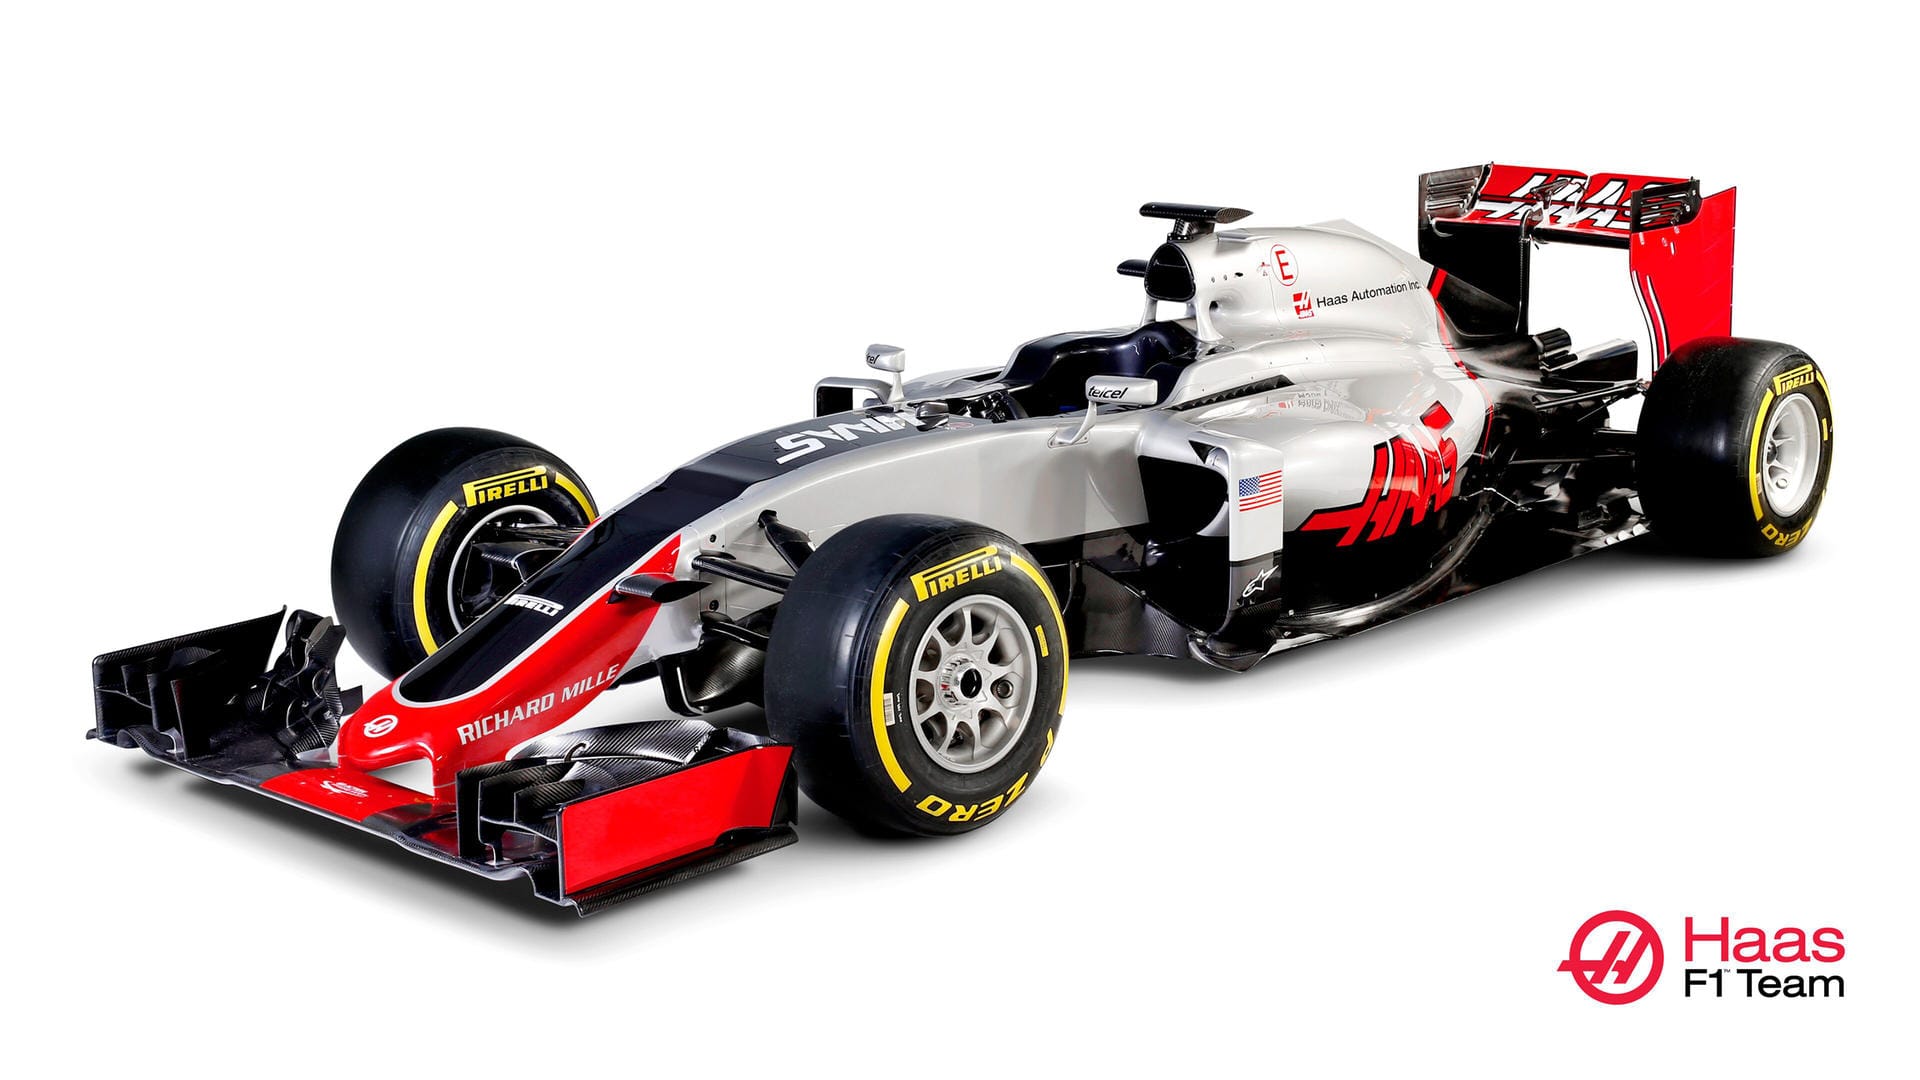 Neuling: Mit diesem Boliden will das Haas-Team in der Premierensaison in der Königsklasse punkten. Angetrieben wird der Rennwagen von einem Ferrari-Motor.